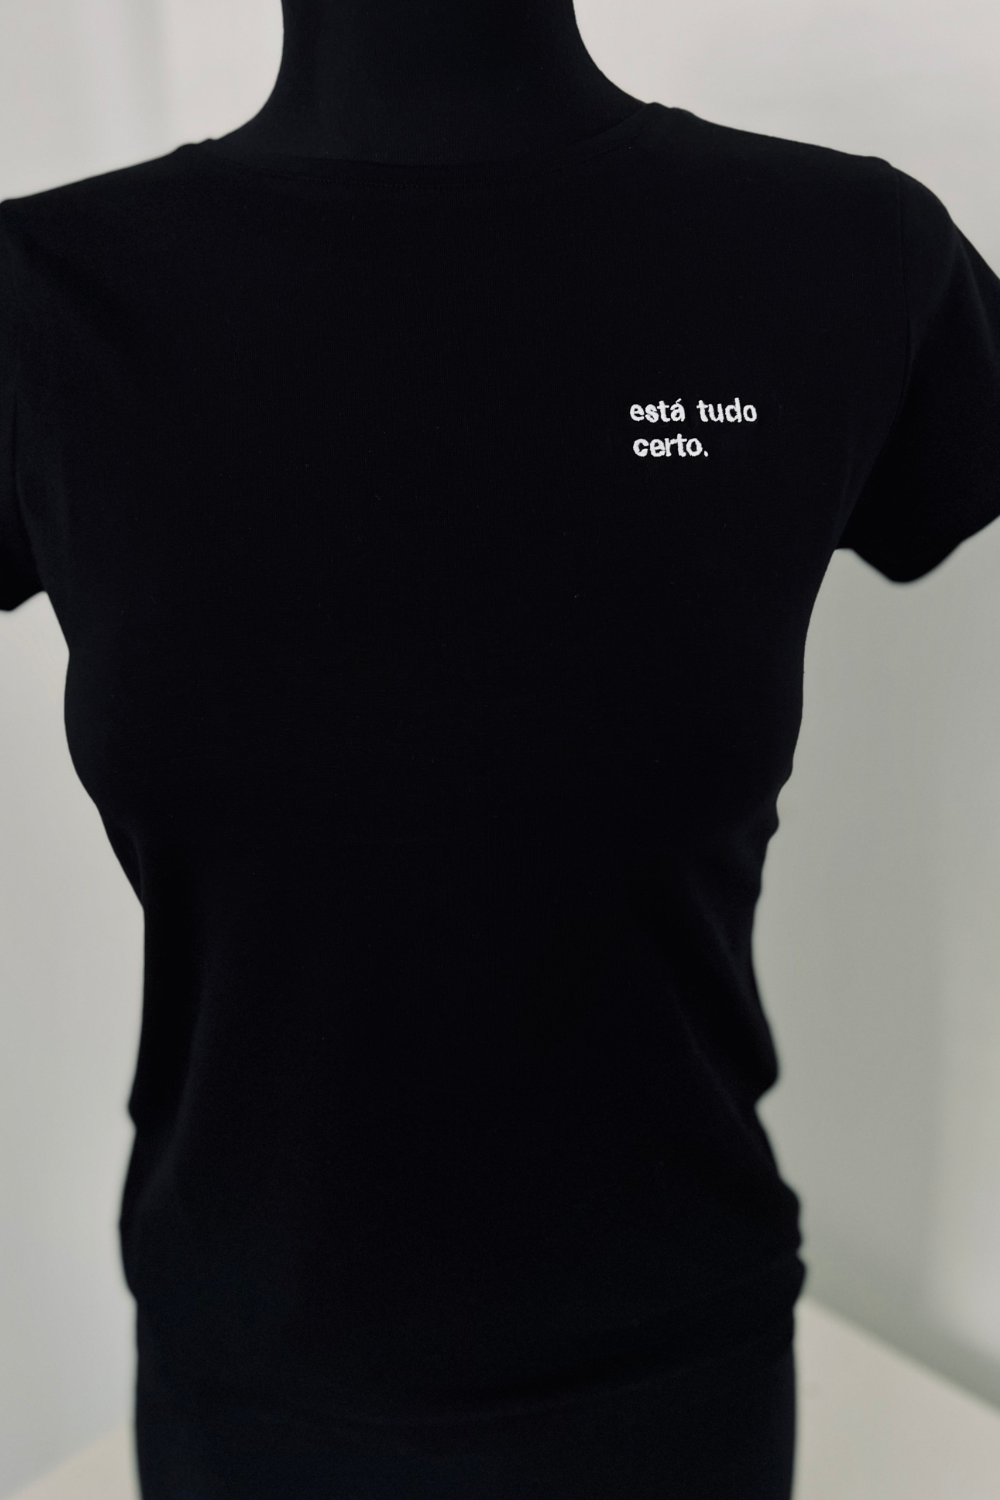 T-shirt Slim - Está tudo Certo